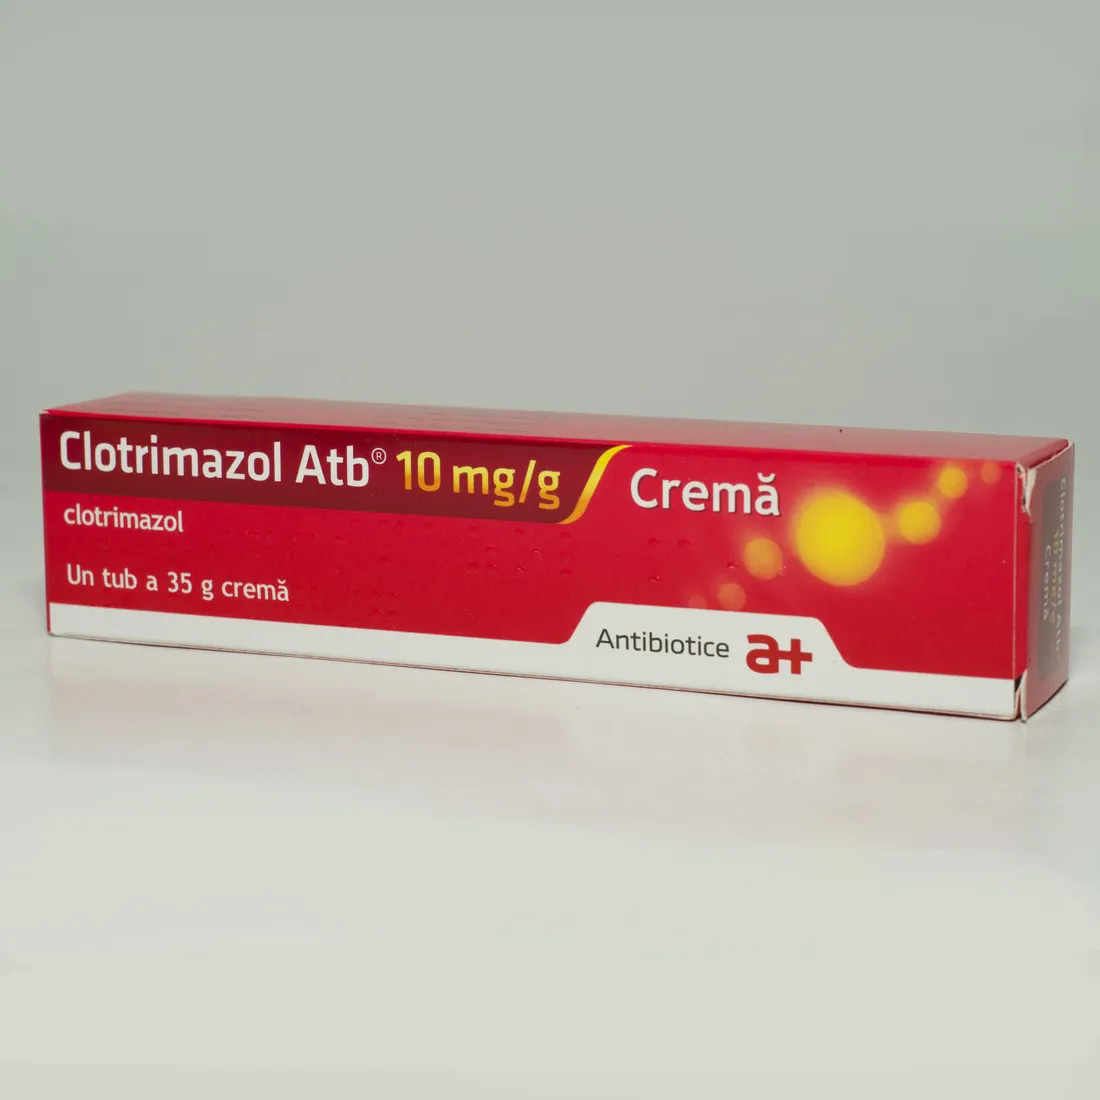 Clotrimazol 1% crema, 15 g, Antibiotice